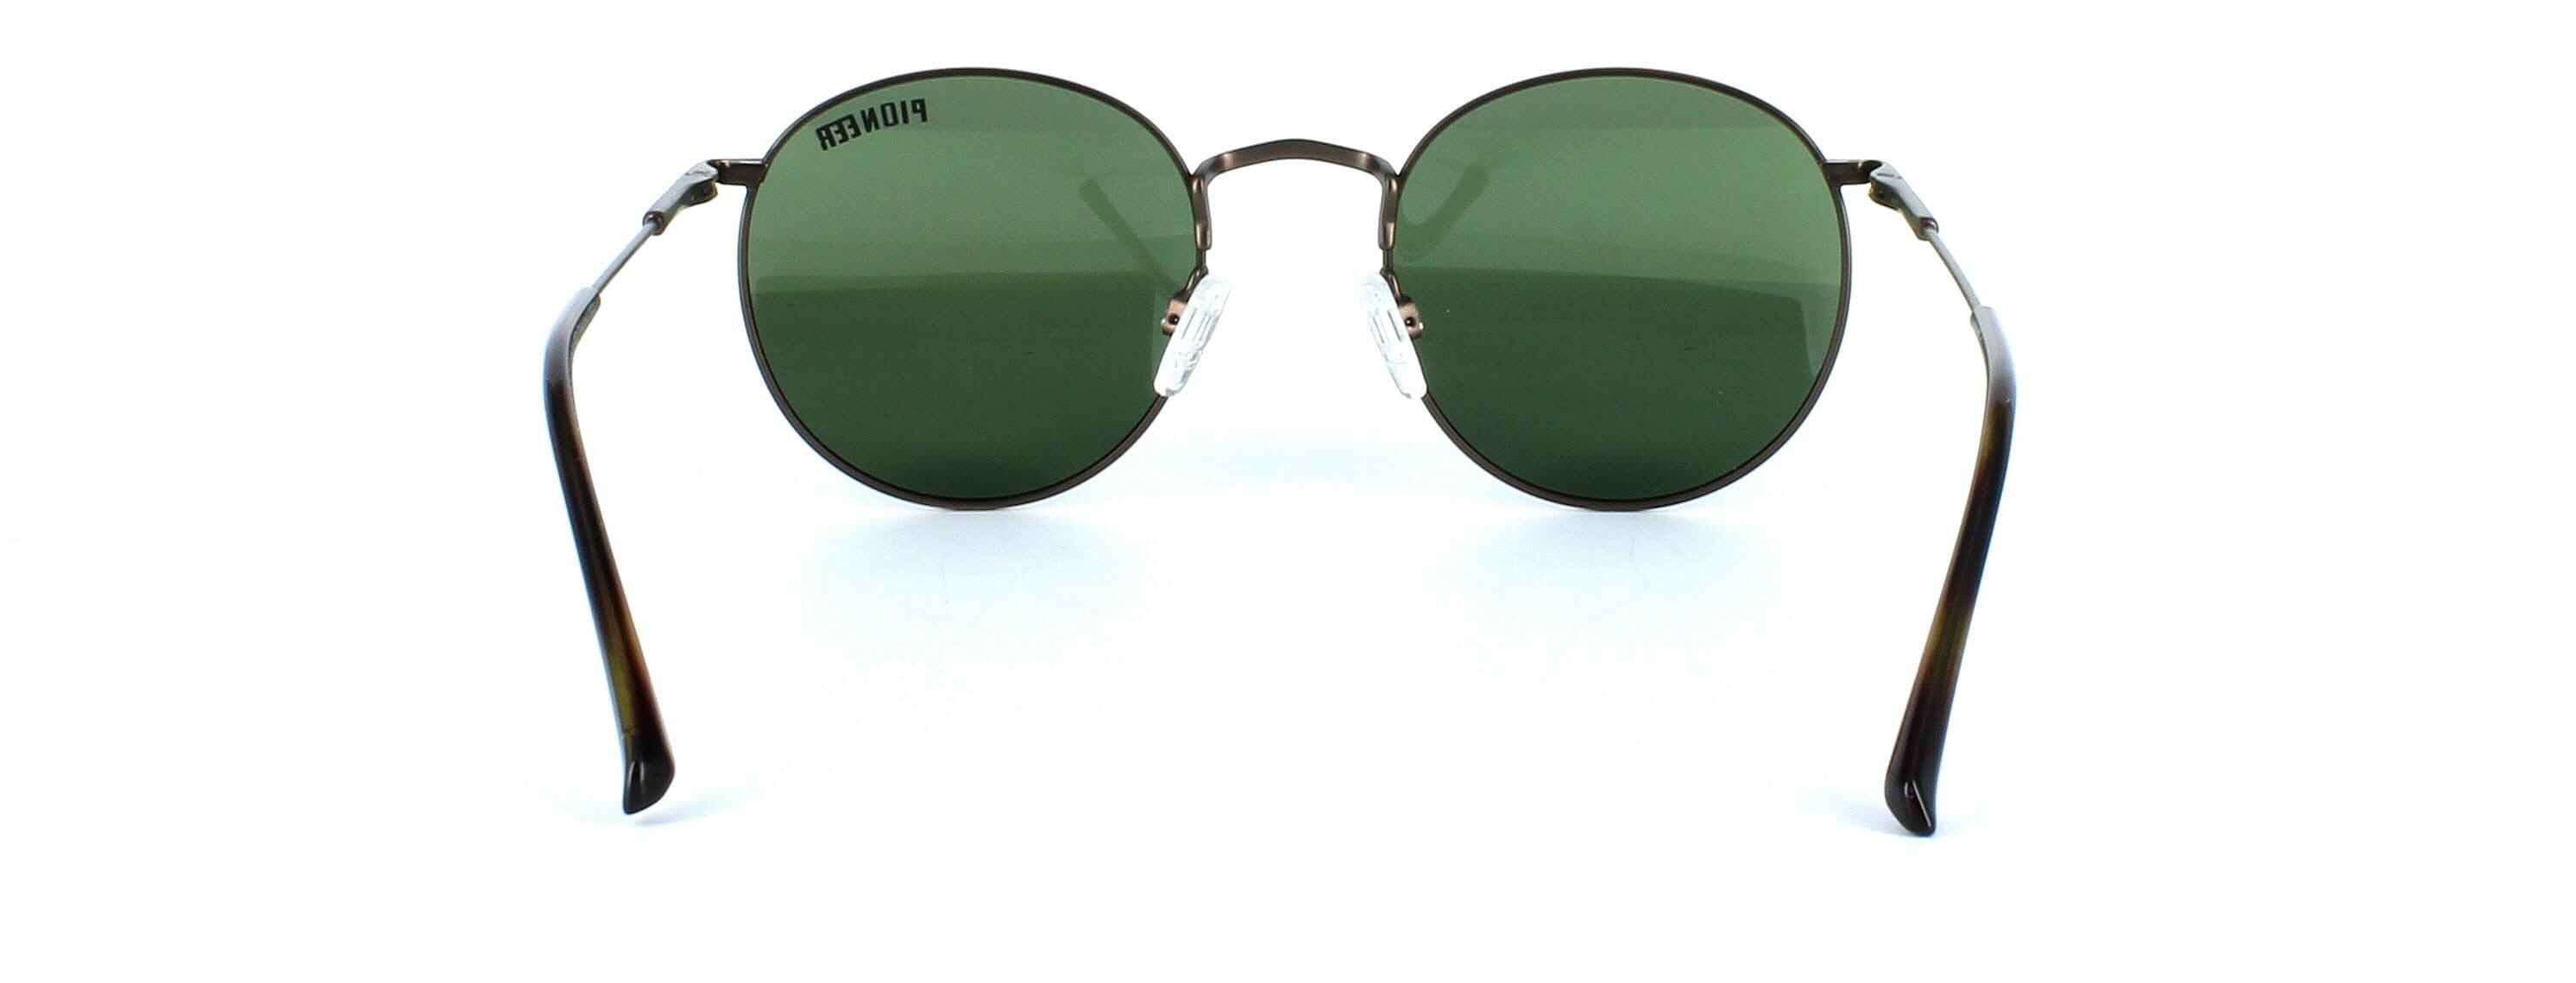 Olmeto - Round shaped pioneer prescription sunglasses - bronze - image view 3